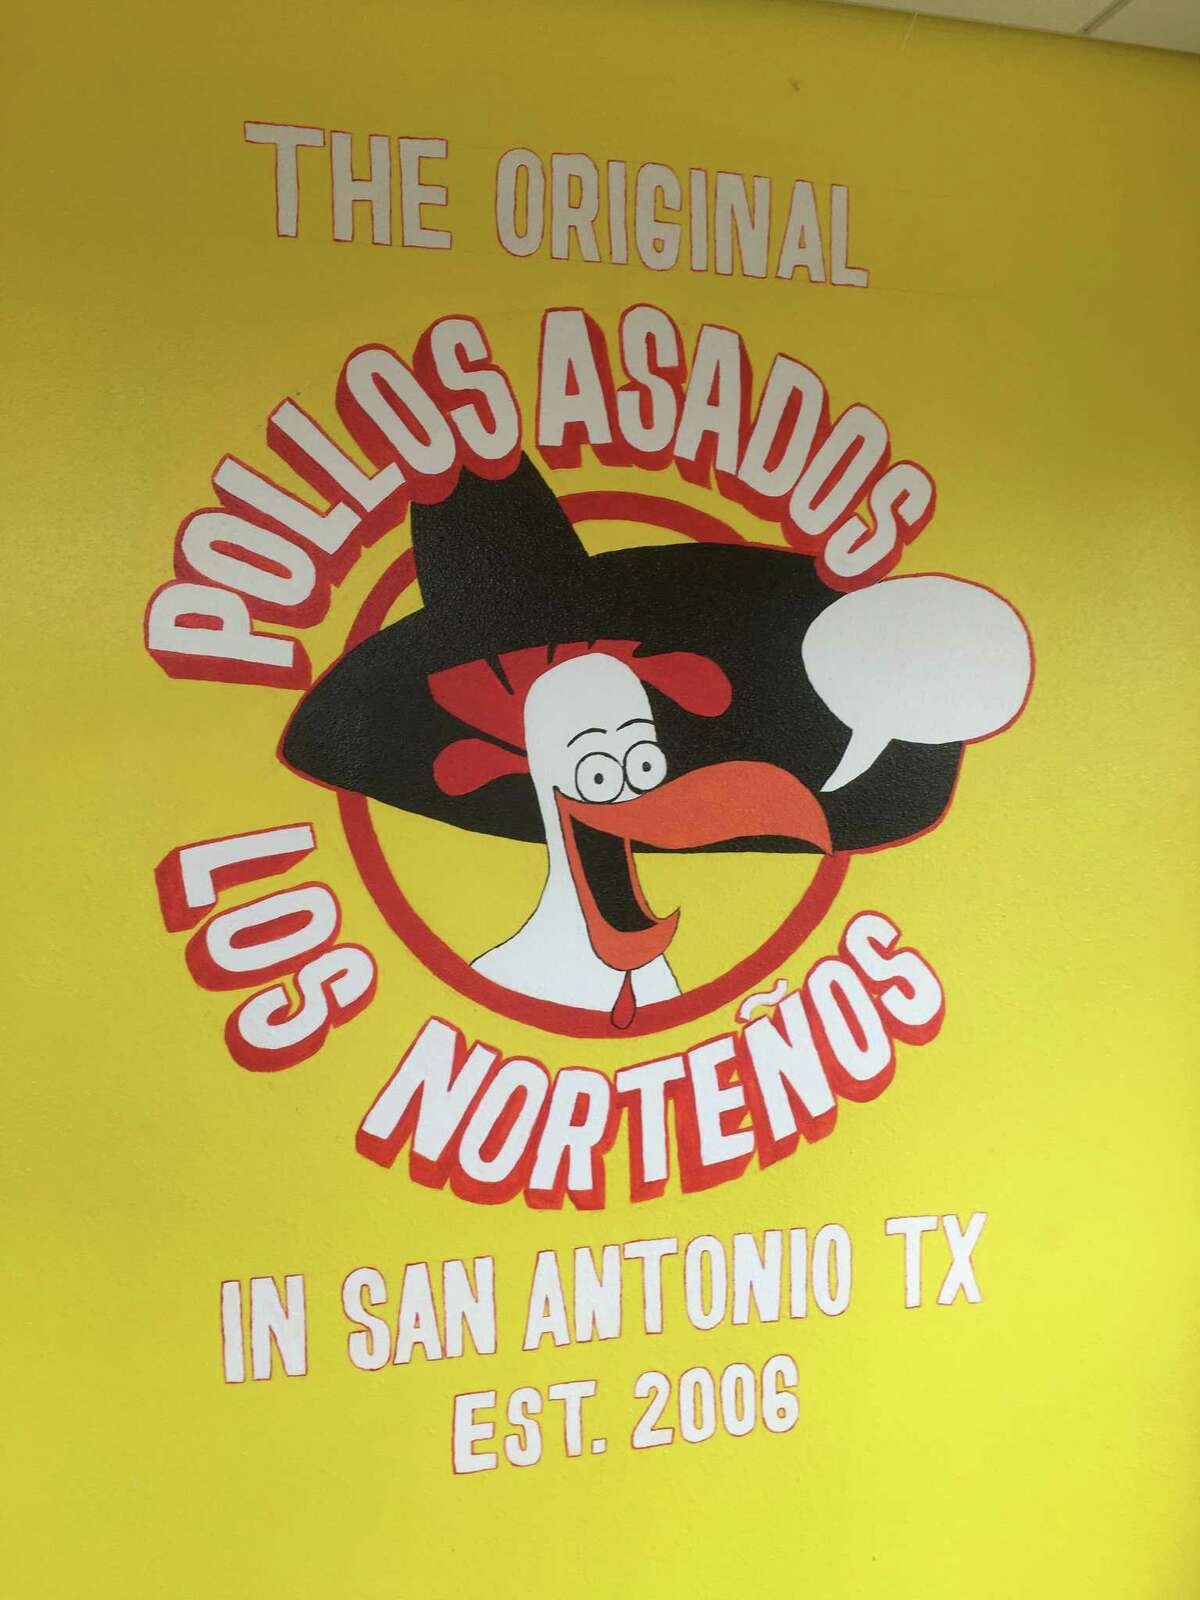 Pollos Asados Los Norteños poised to open second San Antonio location ...